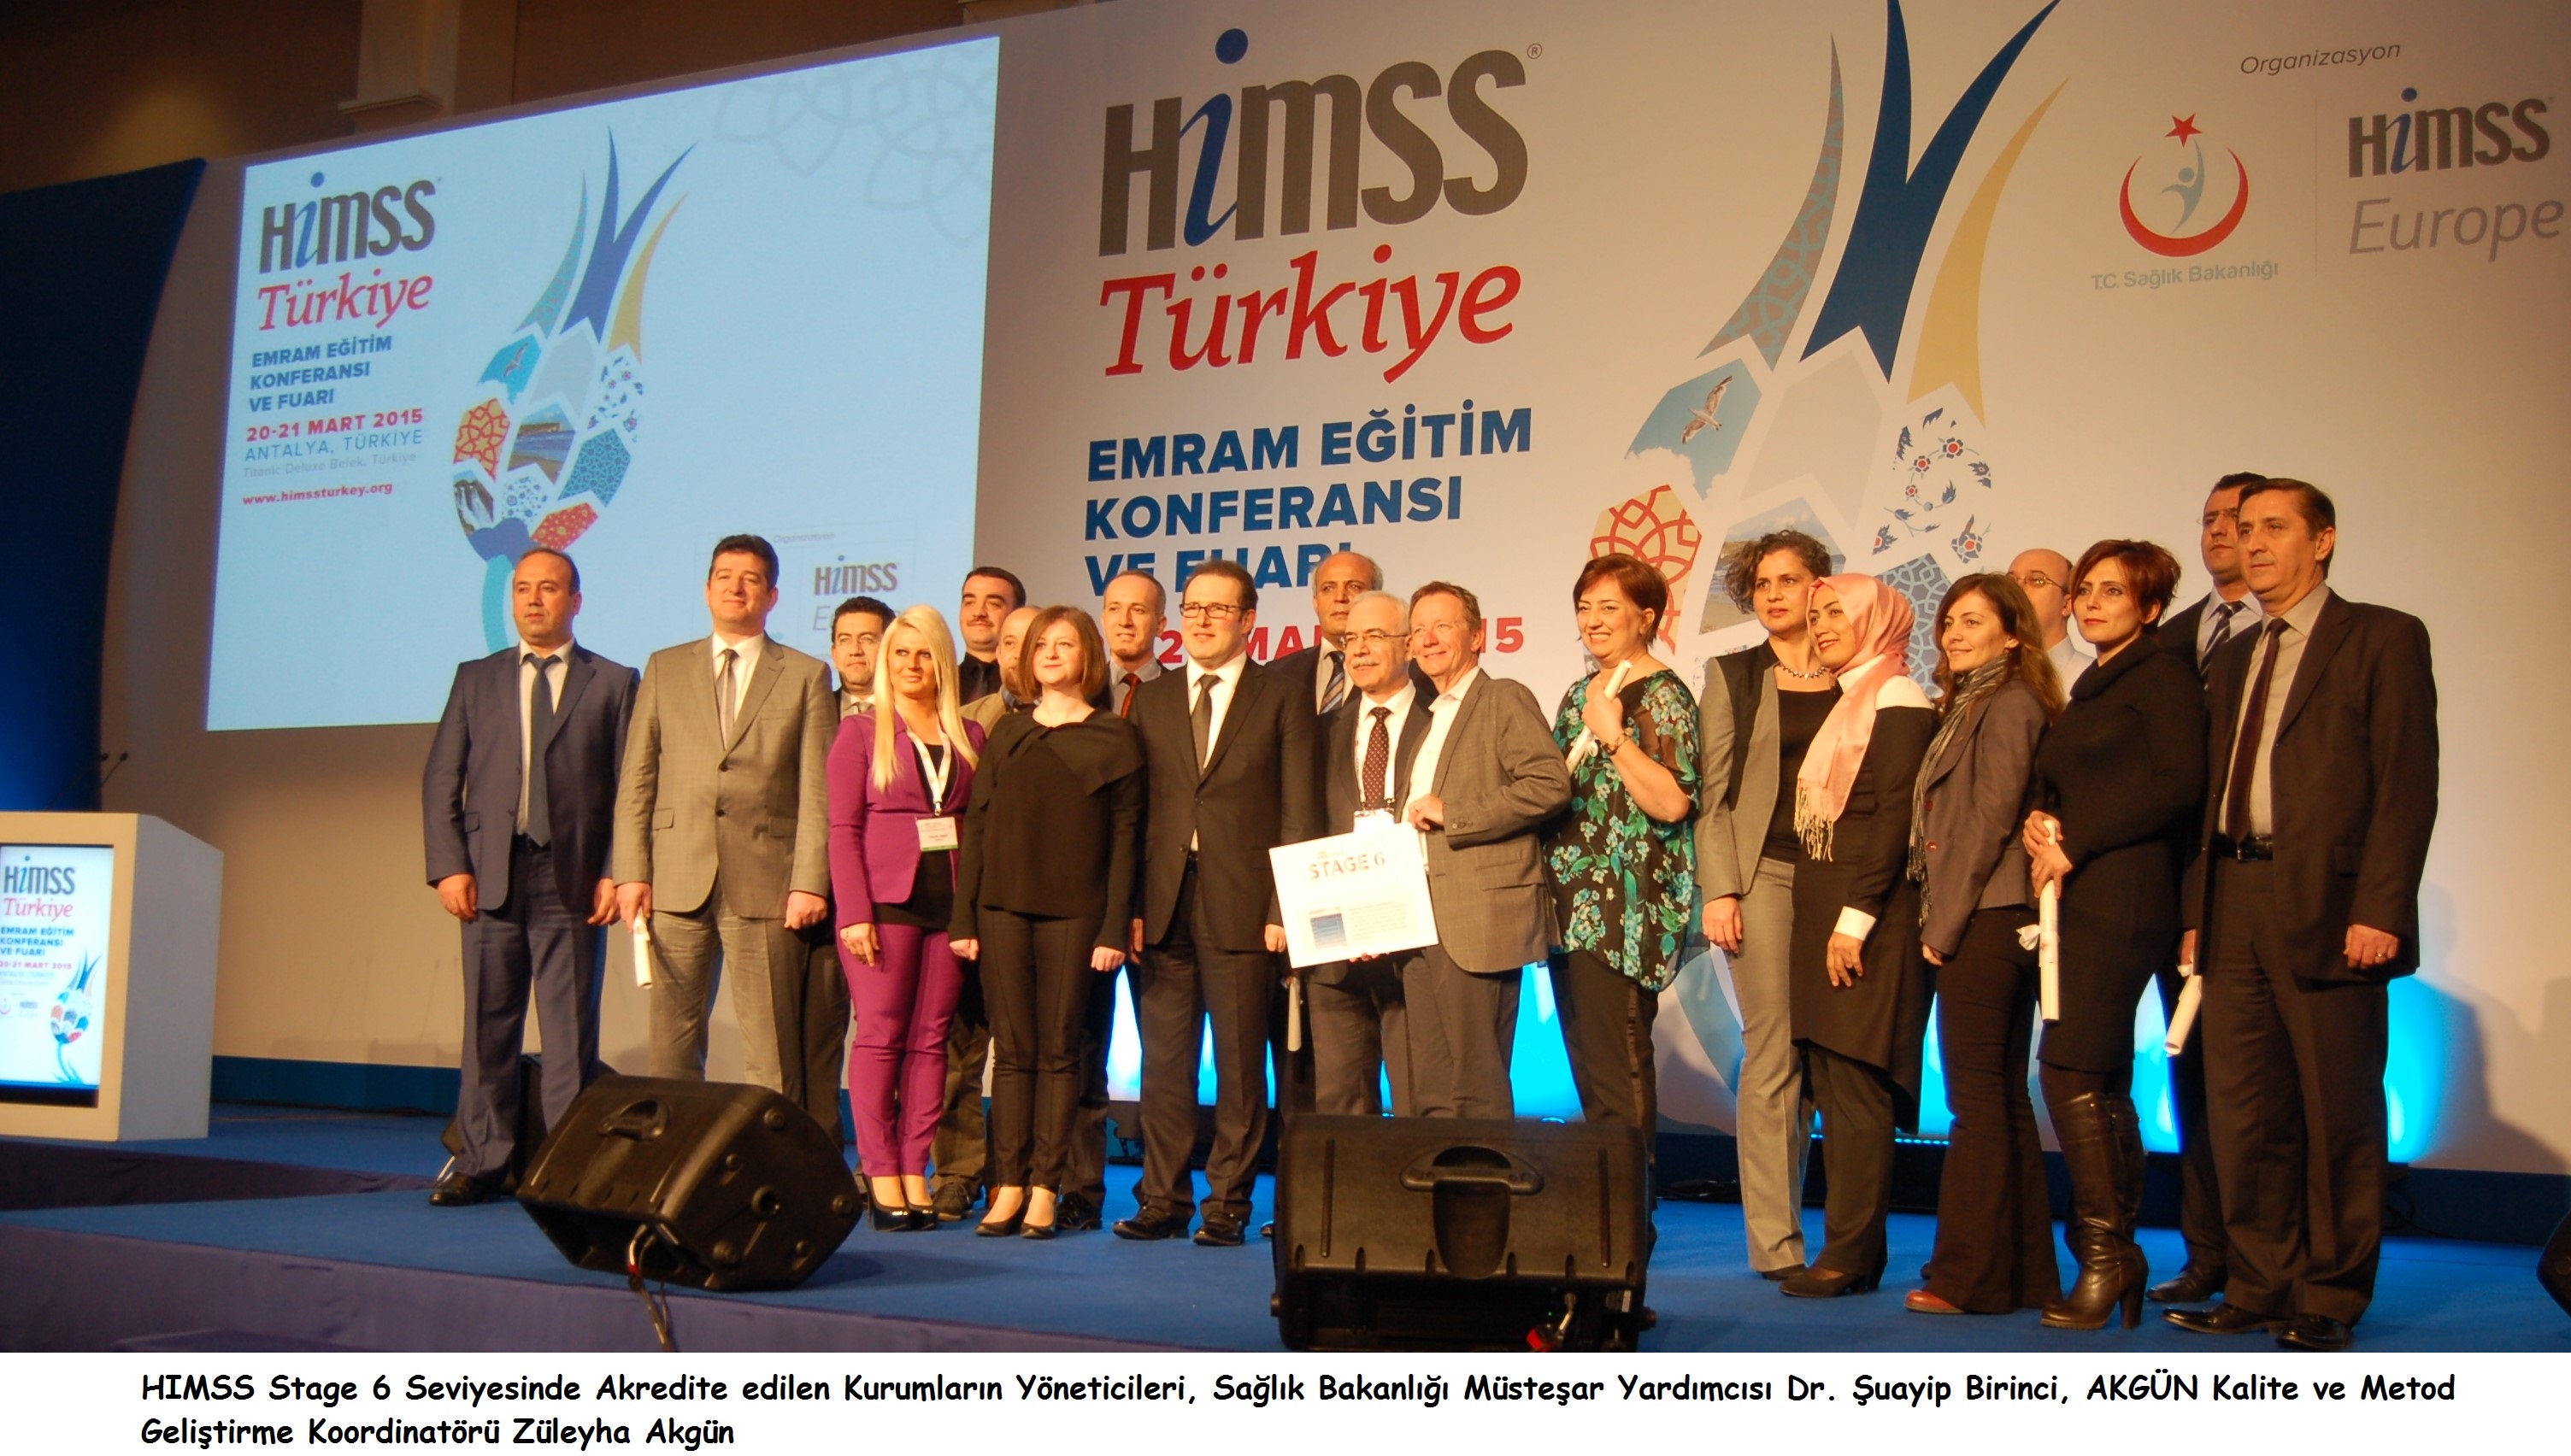 HIMSS Türkiye 2015 EMRAM Eğitim Konferansı ve Fuarının Mihenk Taşı AKGÜN